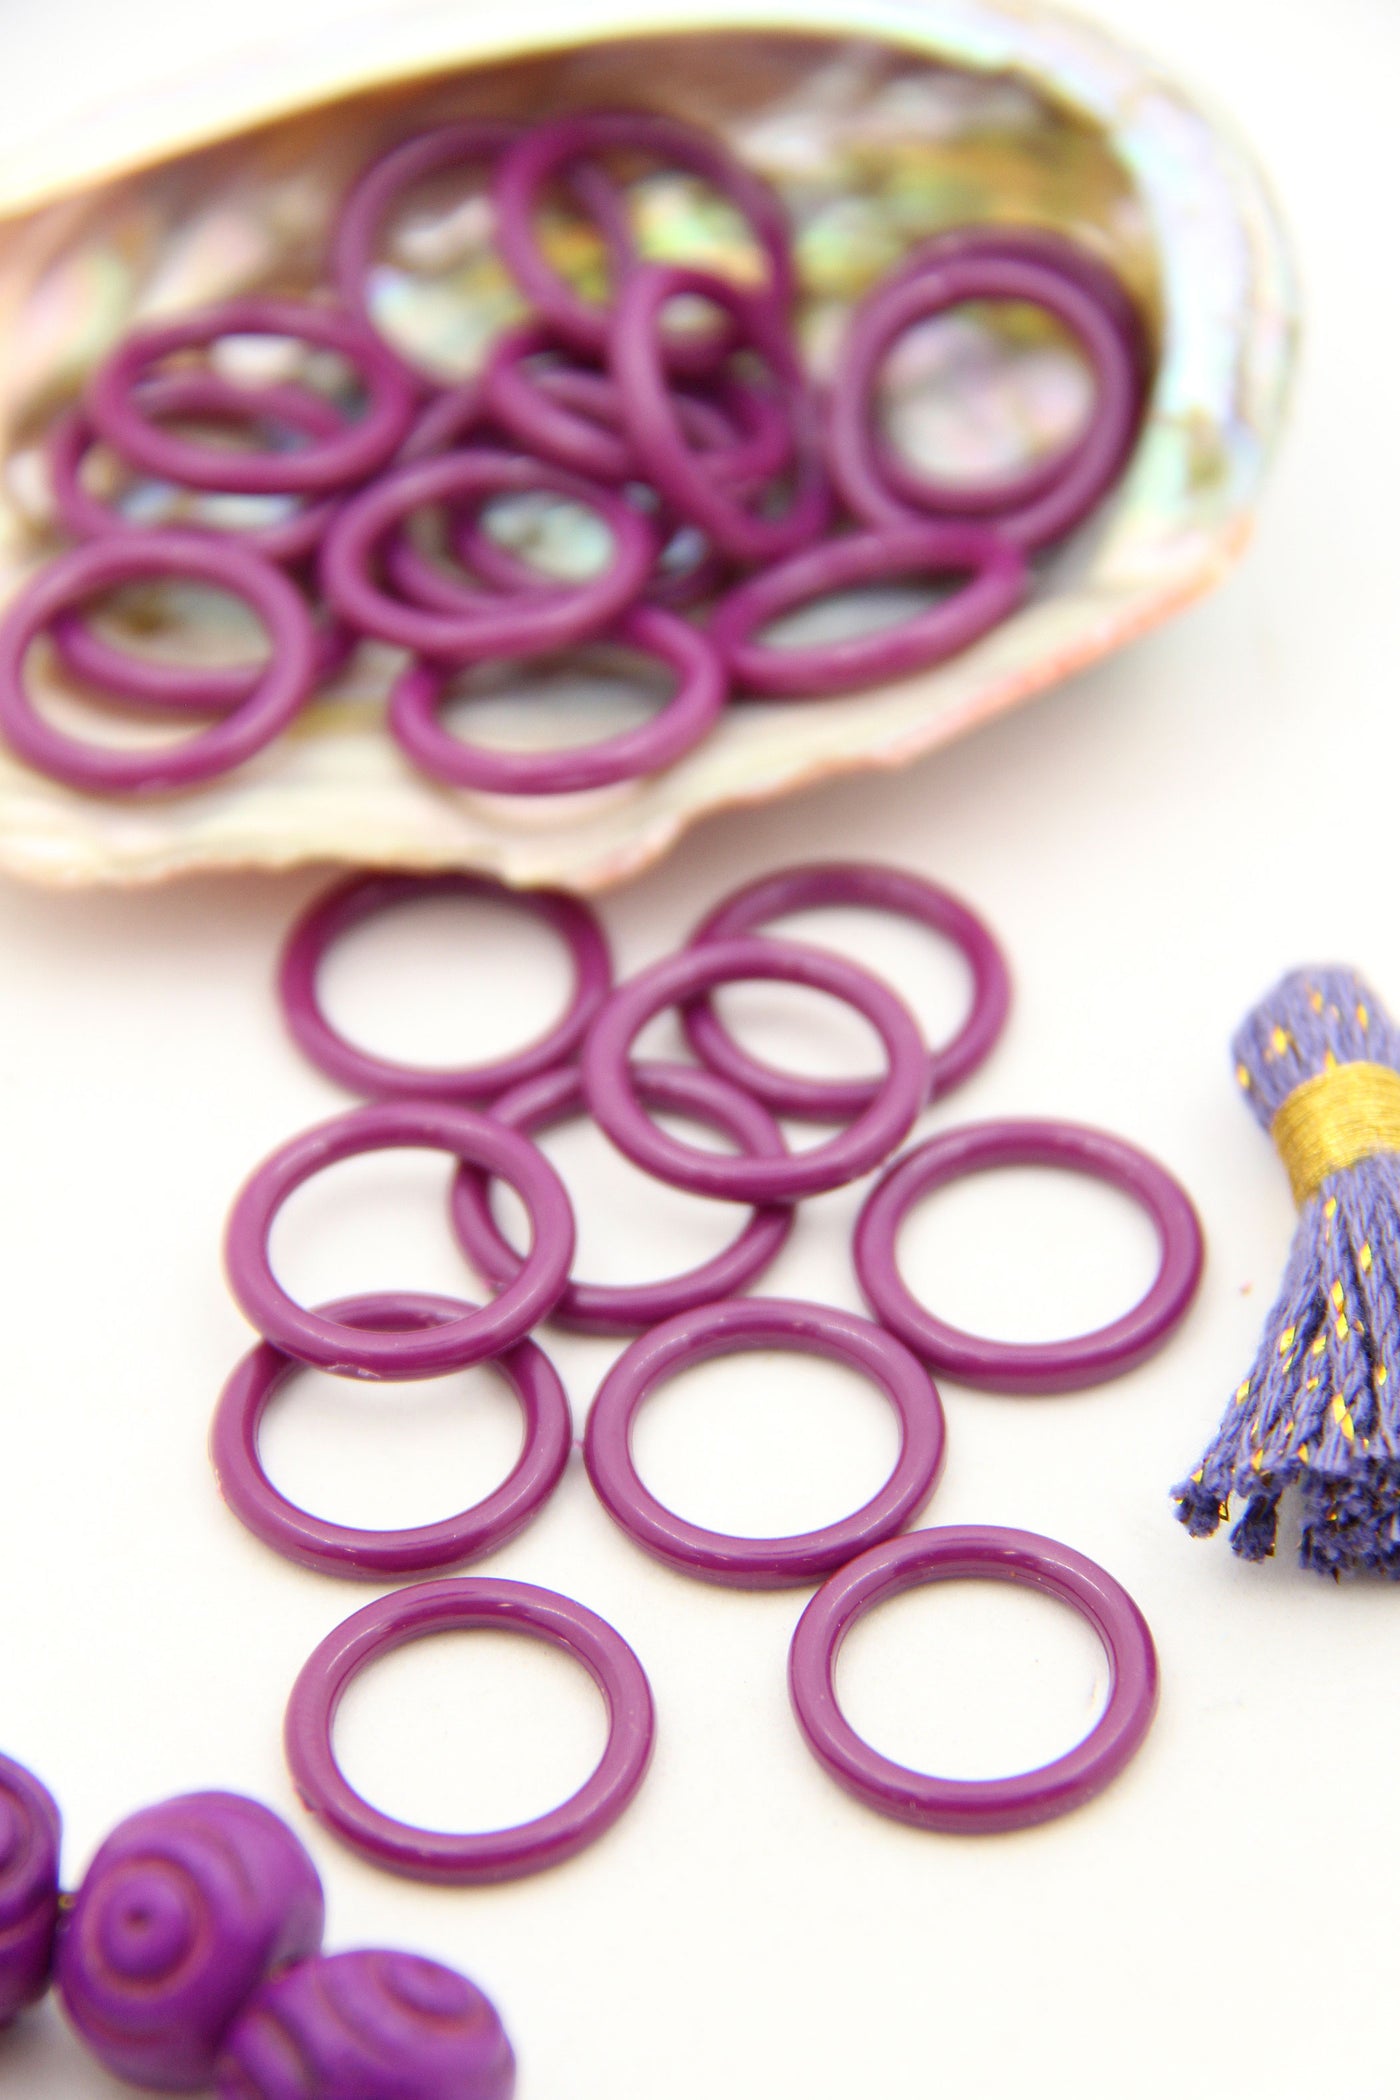 Purple Vintage German Resin Rings for making DIY jewelry, 18mm, 20 Beads